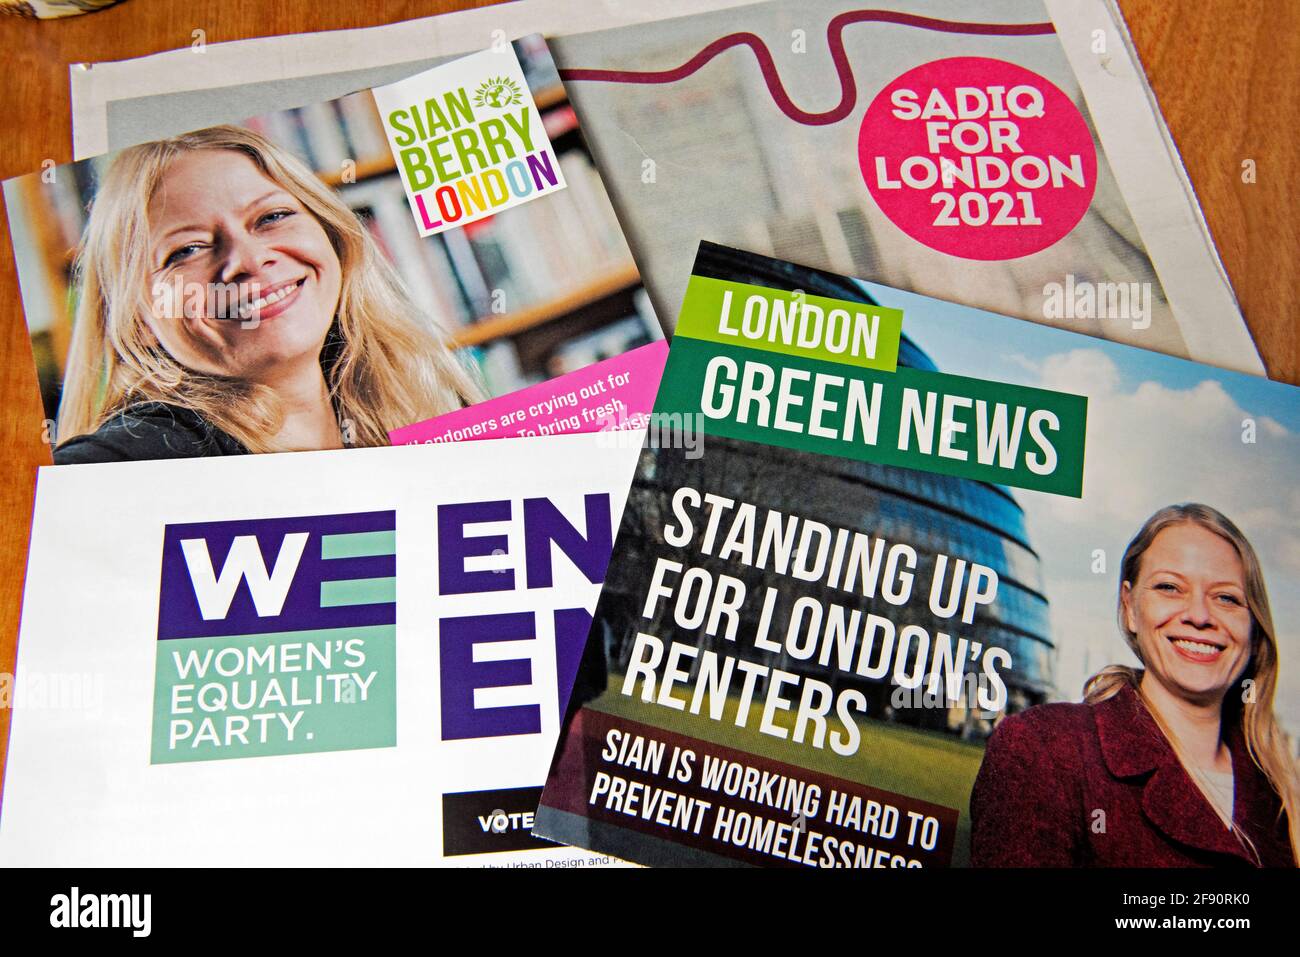 Elecciones Mayorales de Londres folletos políticos, Suian Berry Green Party Candidato, Womens Equality Party, Sadiq Khan Labor para Alcalde de Londres en el Reino Unido 2 Foto de stock